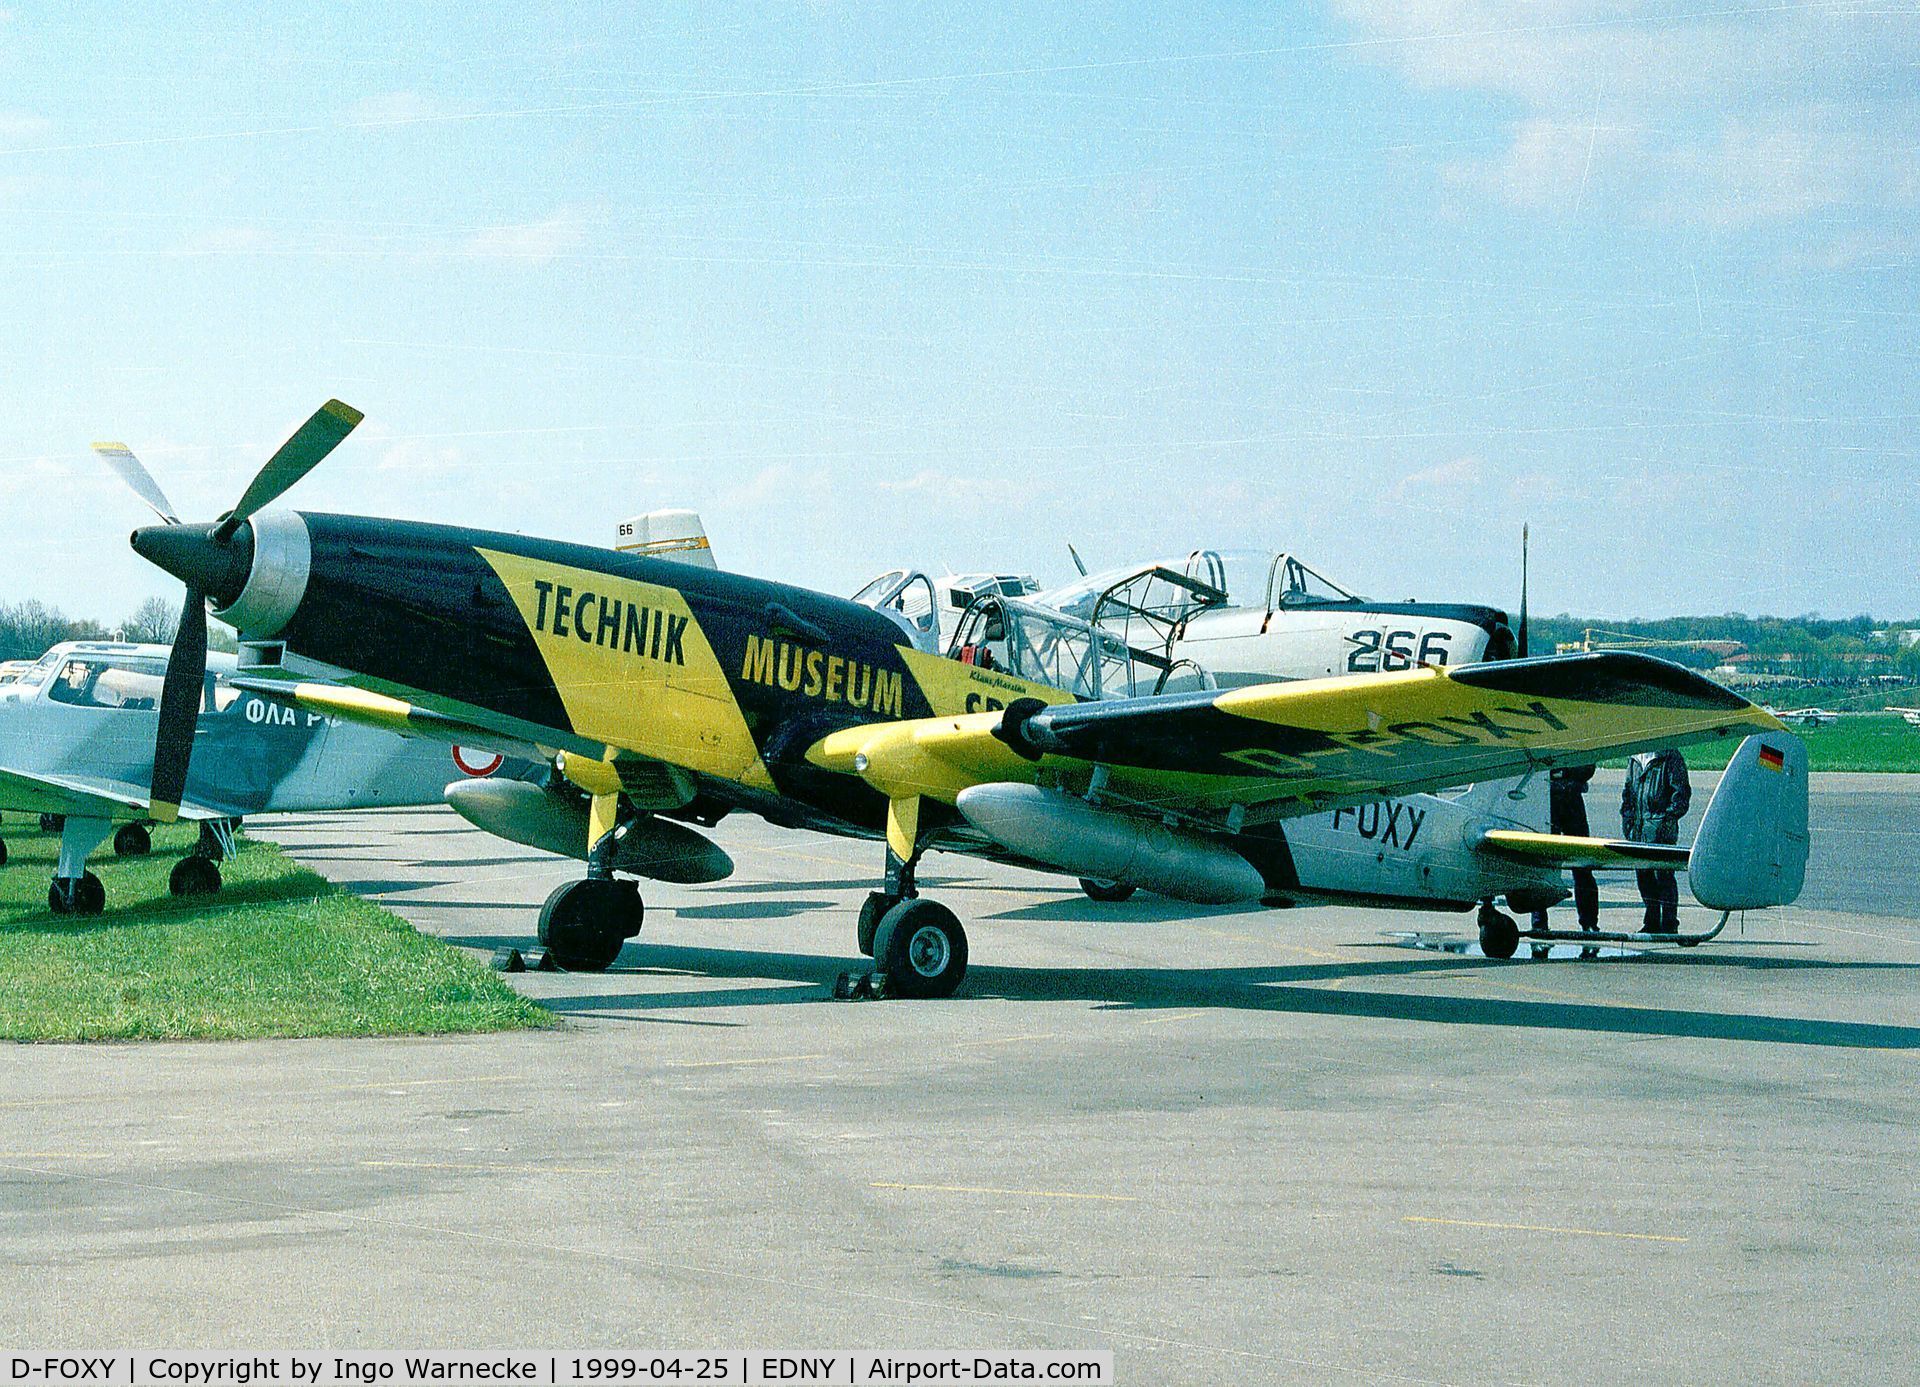 D-FOXY, F+W C-3605 Schlepp C/N 315, Eidgenössisches Flugzeugwerk (F+W) Emmen C-3605 Schlepp at the Aero 1999, Friedrichshafen